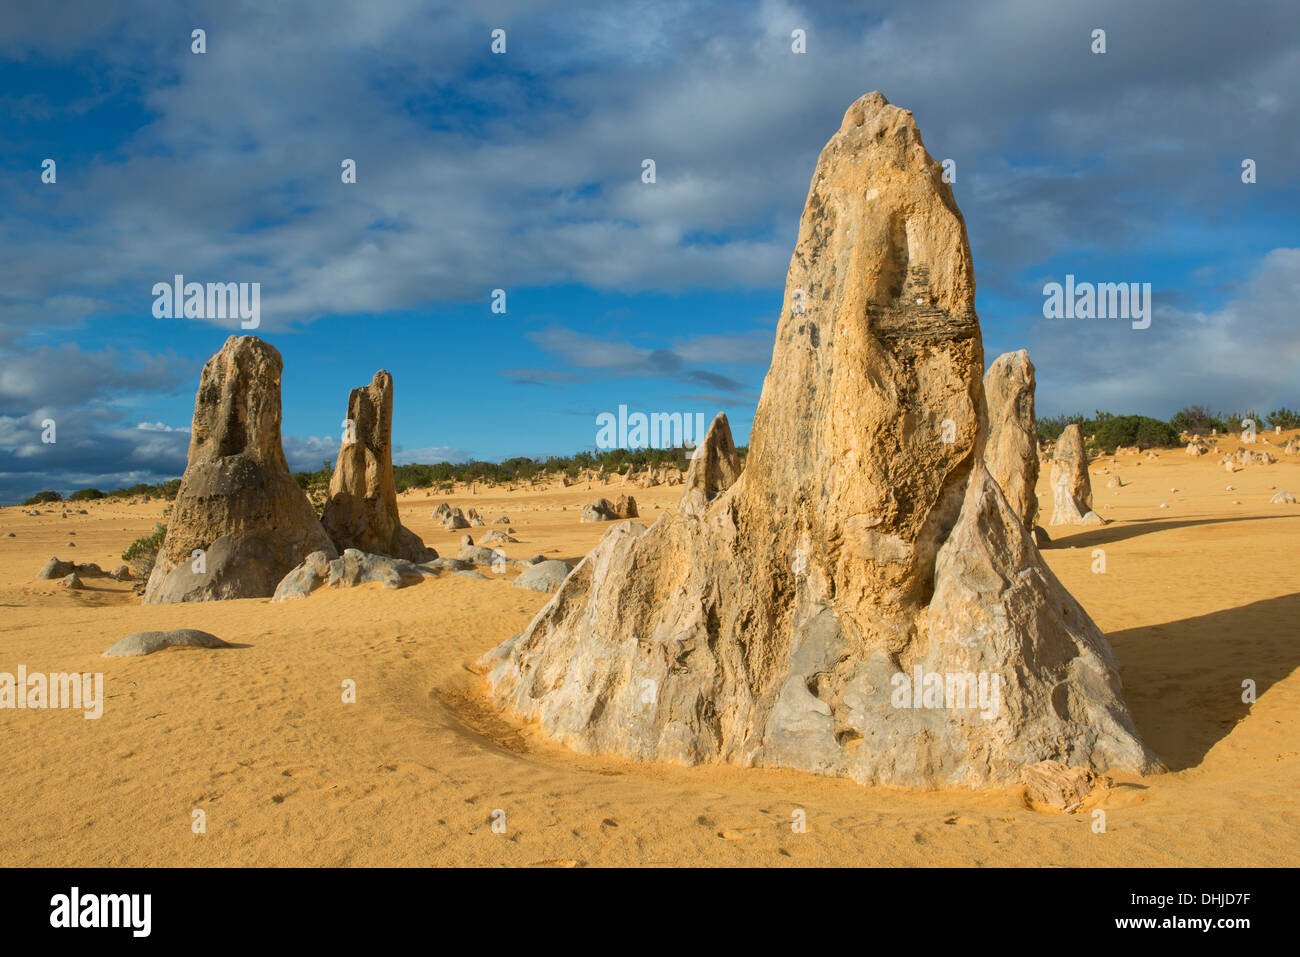 Pinnacles, Nambung National Park, Western Australia Stock Photo